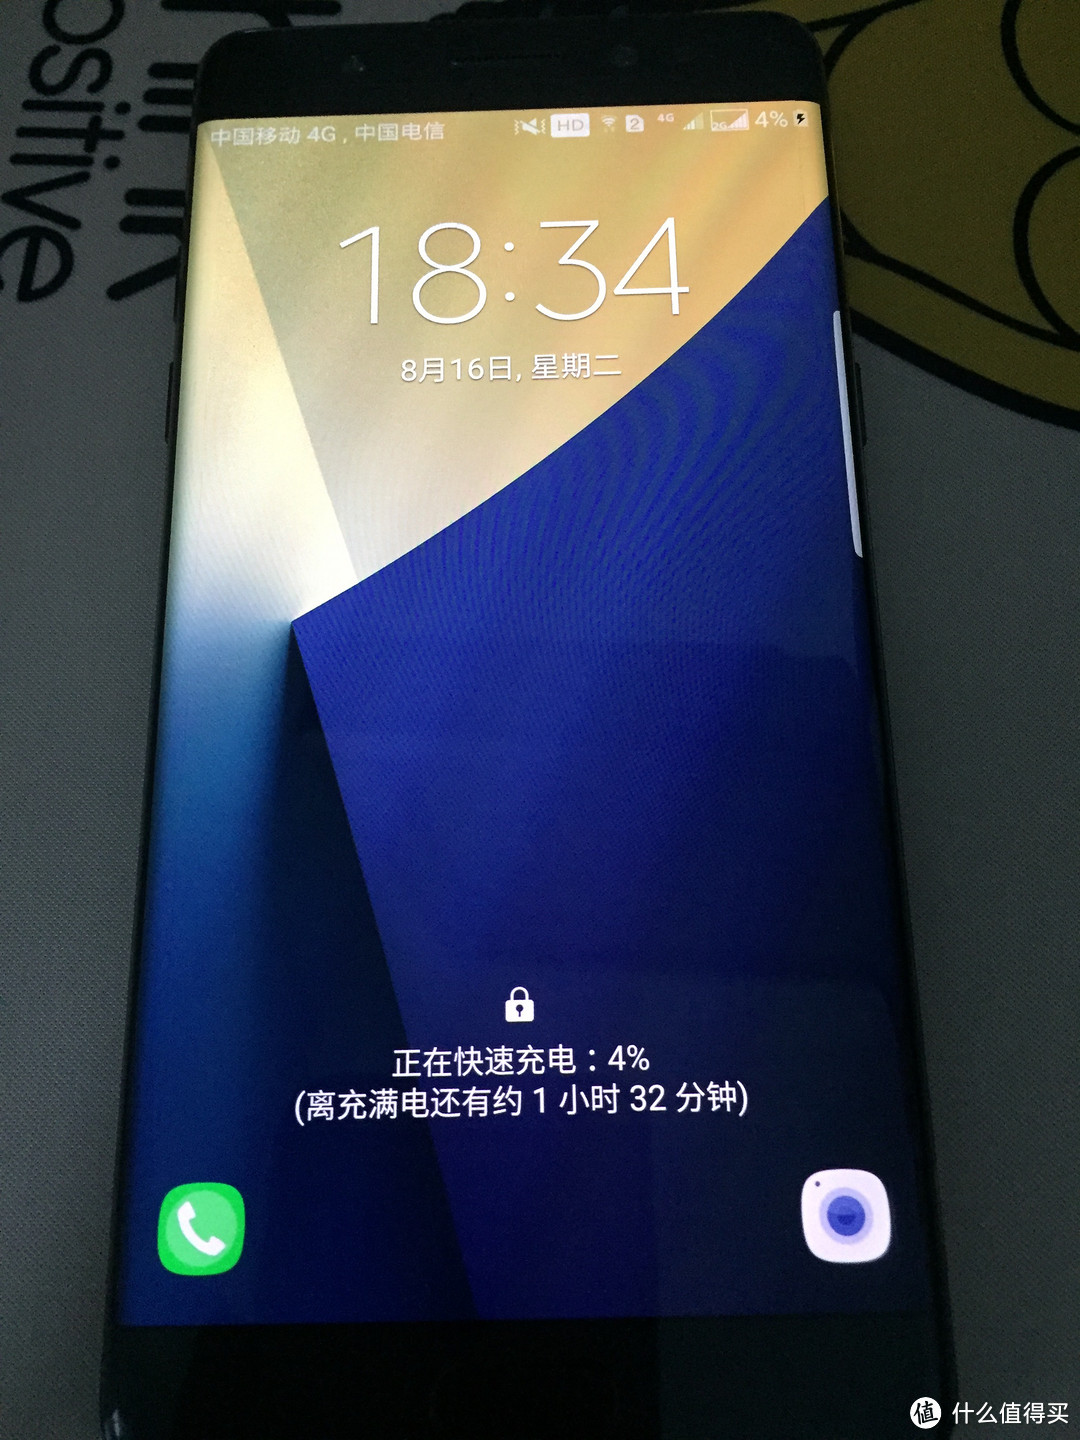 体会最美的一面 ——SAMSUNG 三星 Galaxy Note7 手机 超详细使用报告